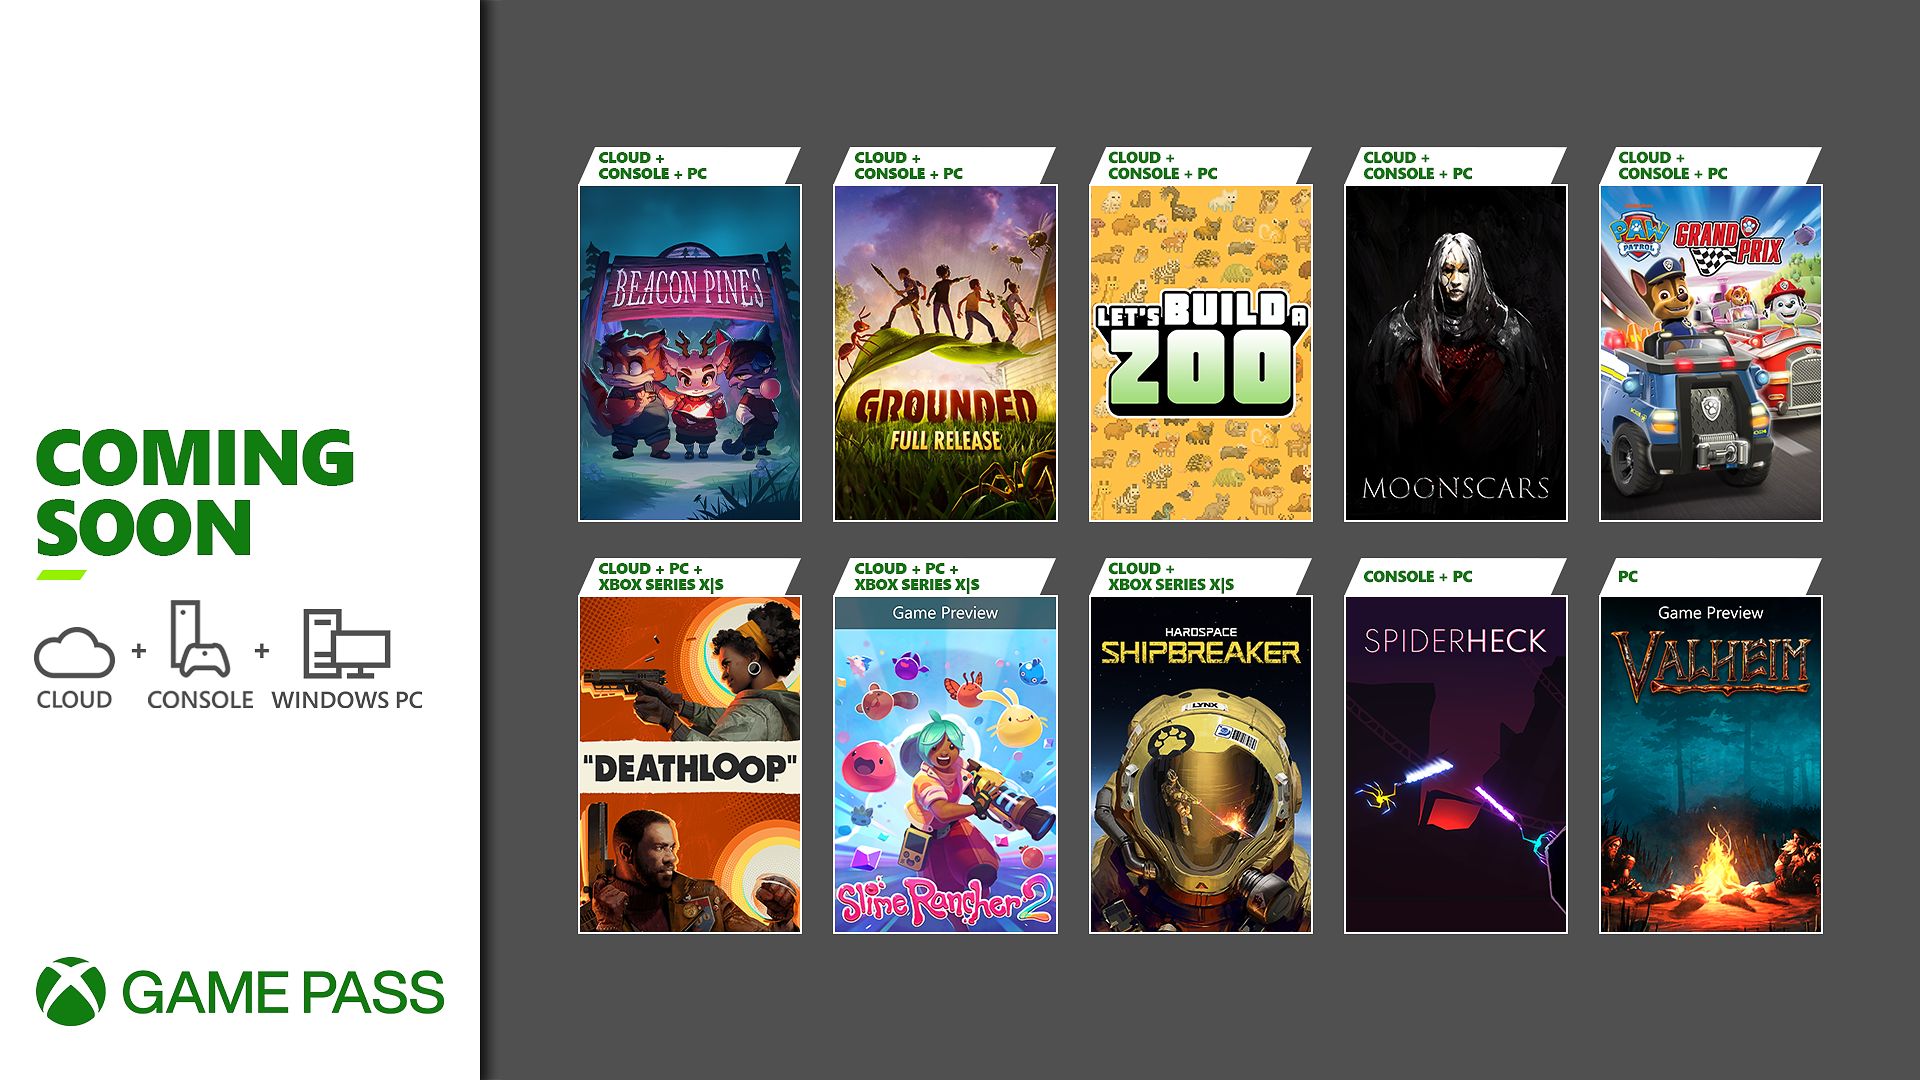 O Slime Rancher 2 estará no Xbox One, PS4, PS5 ou Switch?